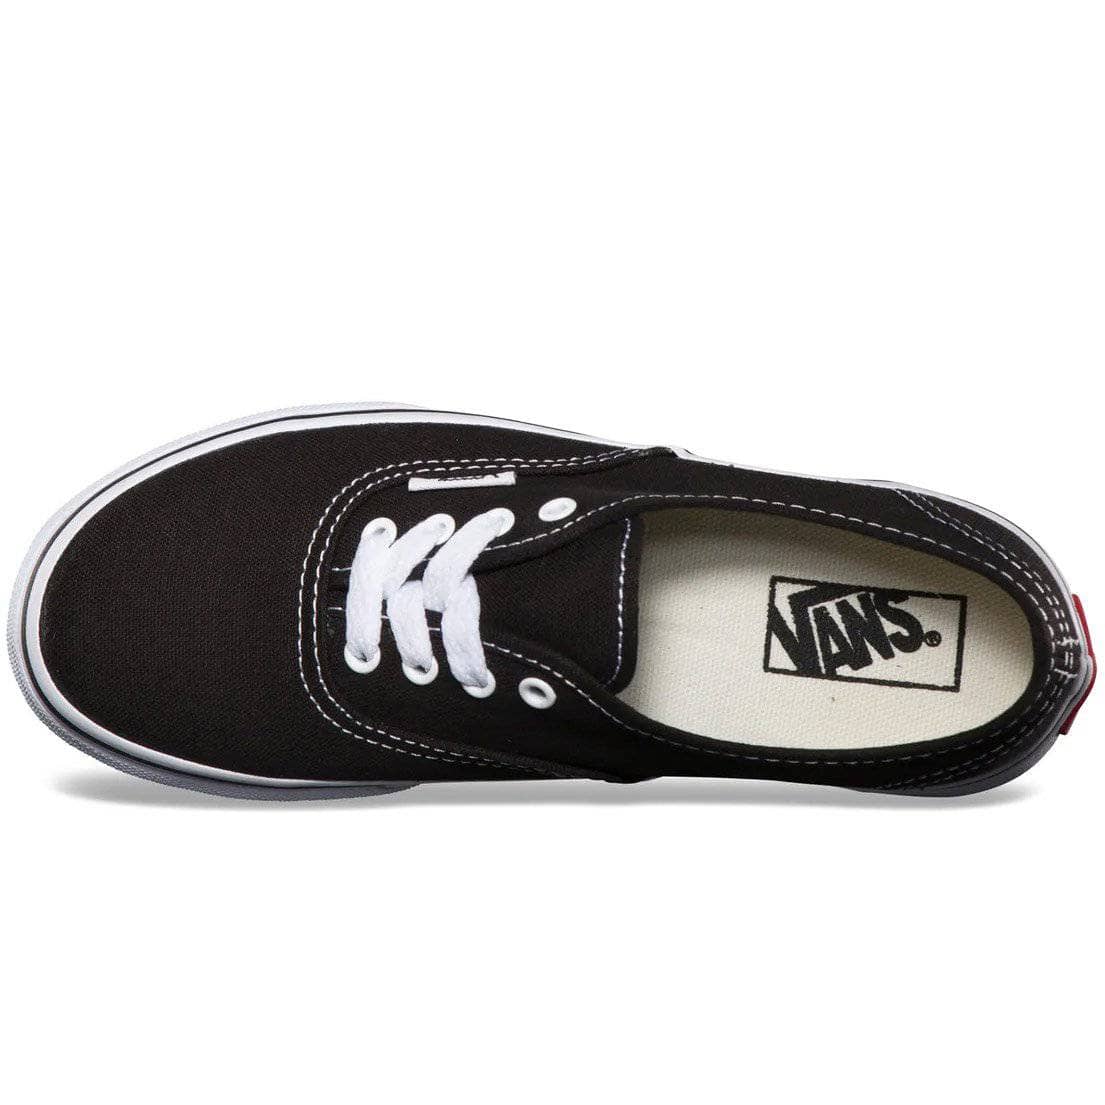 Vans Kids Authentic Skate Shoes Black True White